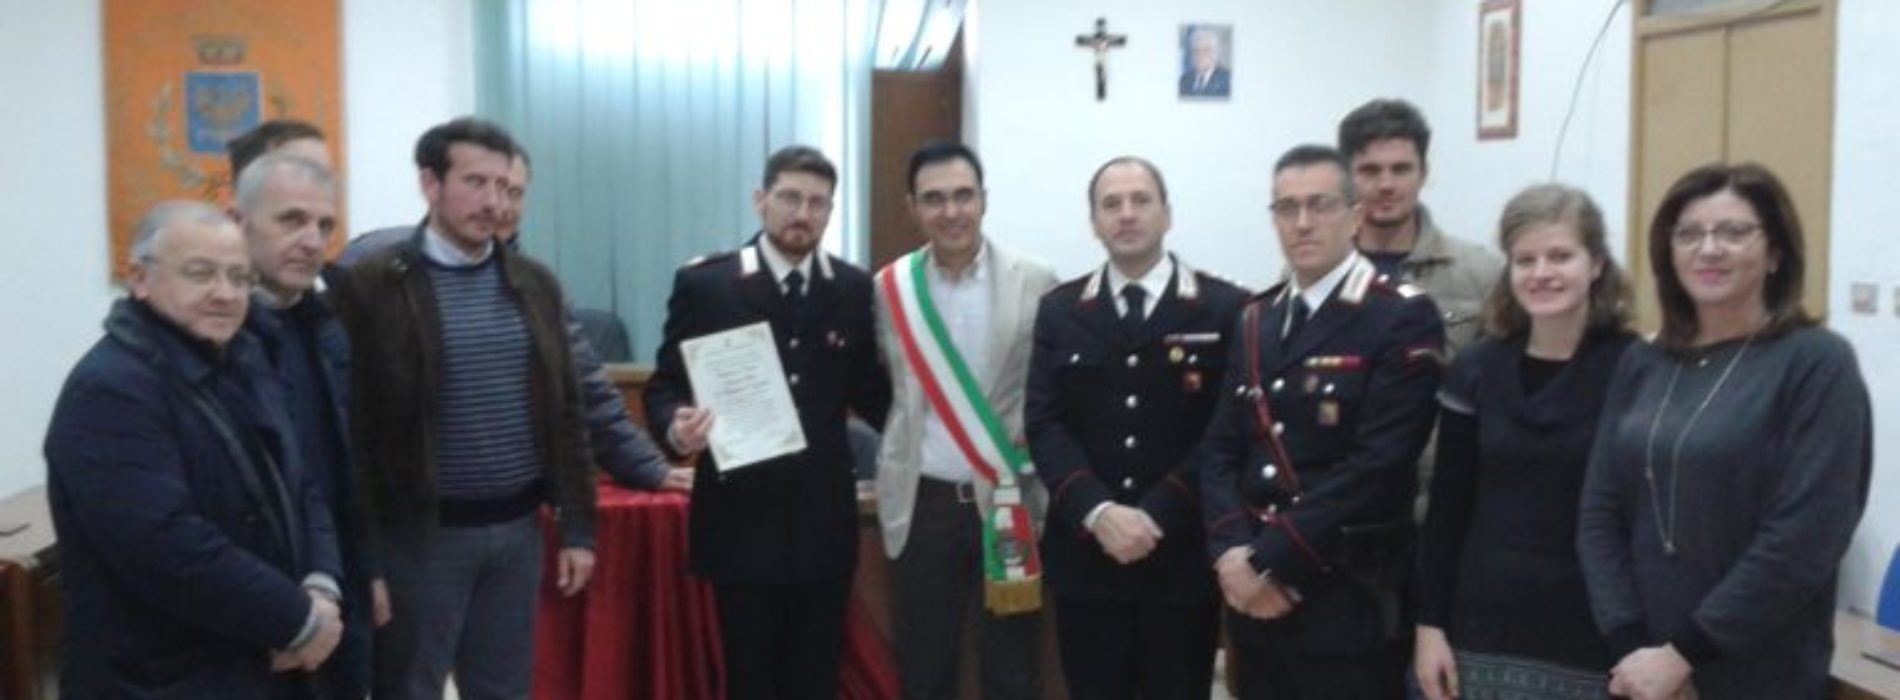 Cittadinanza onoraria conferita al vicebrigadiere dei carabinieri Domenico Mitola